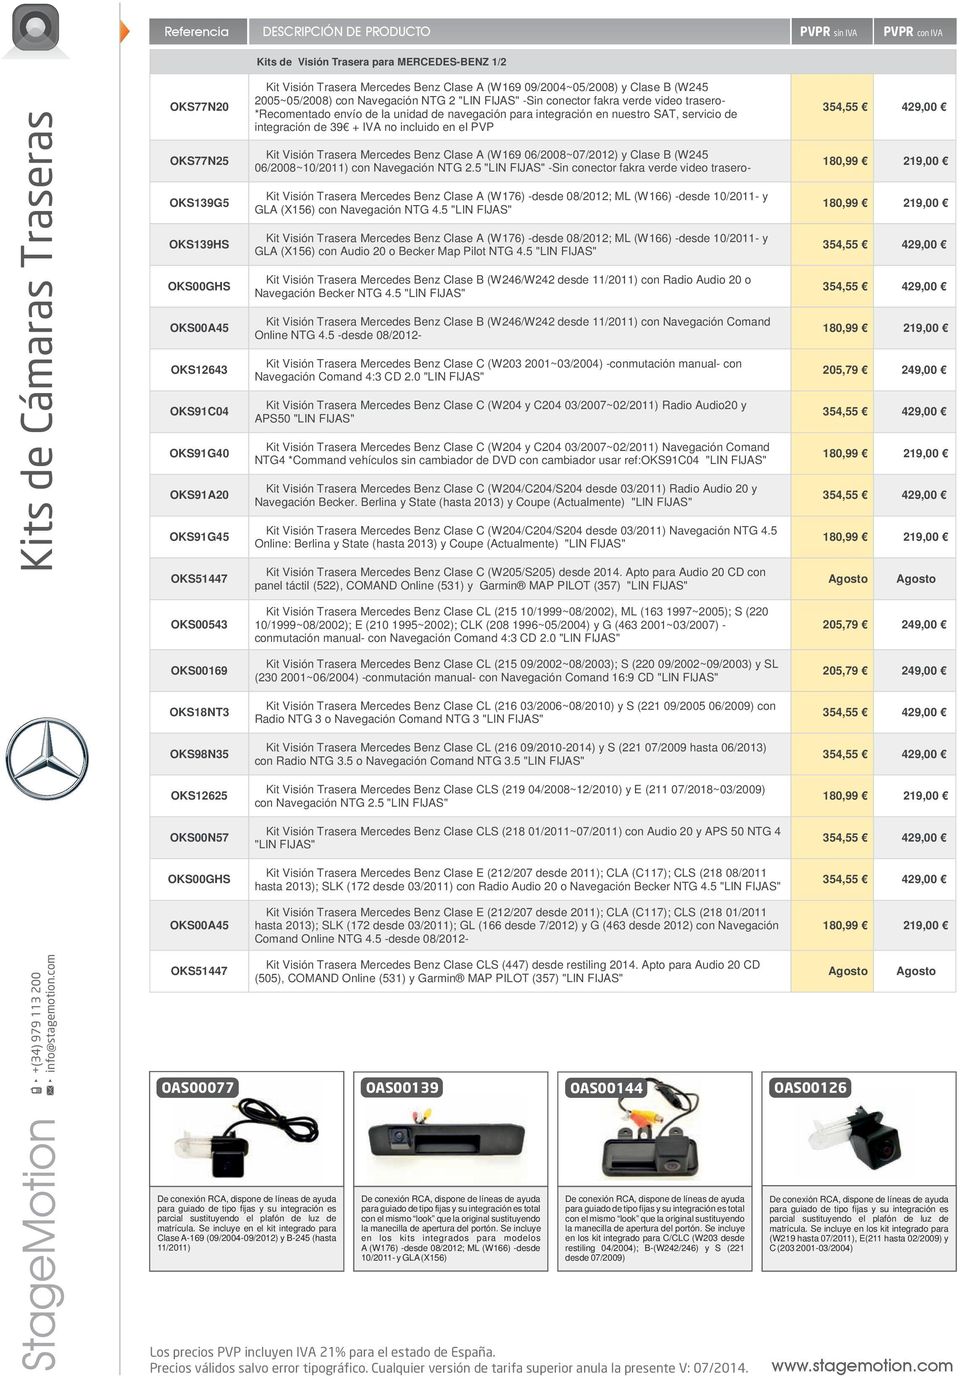 servicio de integración de 39 + IVA no incluido en el PVP Kit Visión Trasera Mercedes Benz Clase A (W169 06/2008~07/2012) y Clase B (W245 06/2008~10/2011) con Navegación NTG 2.